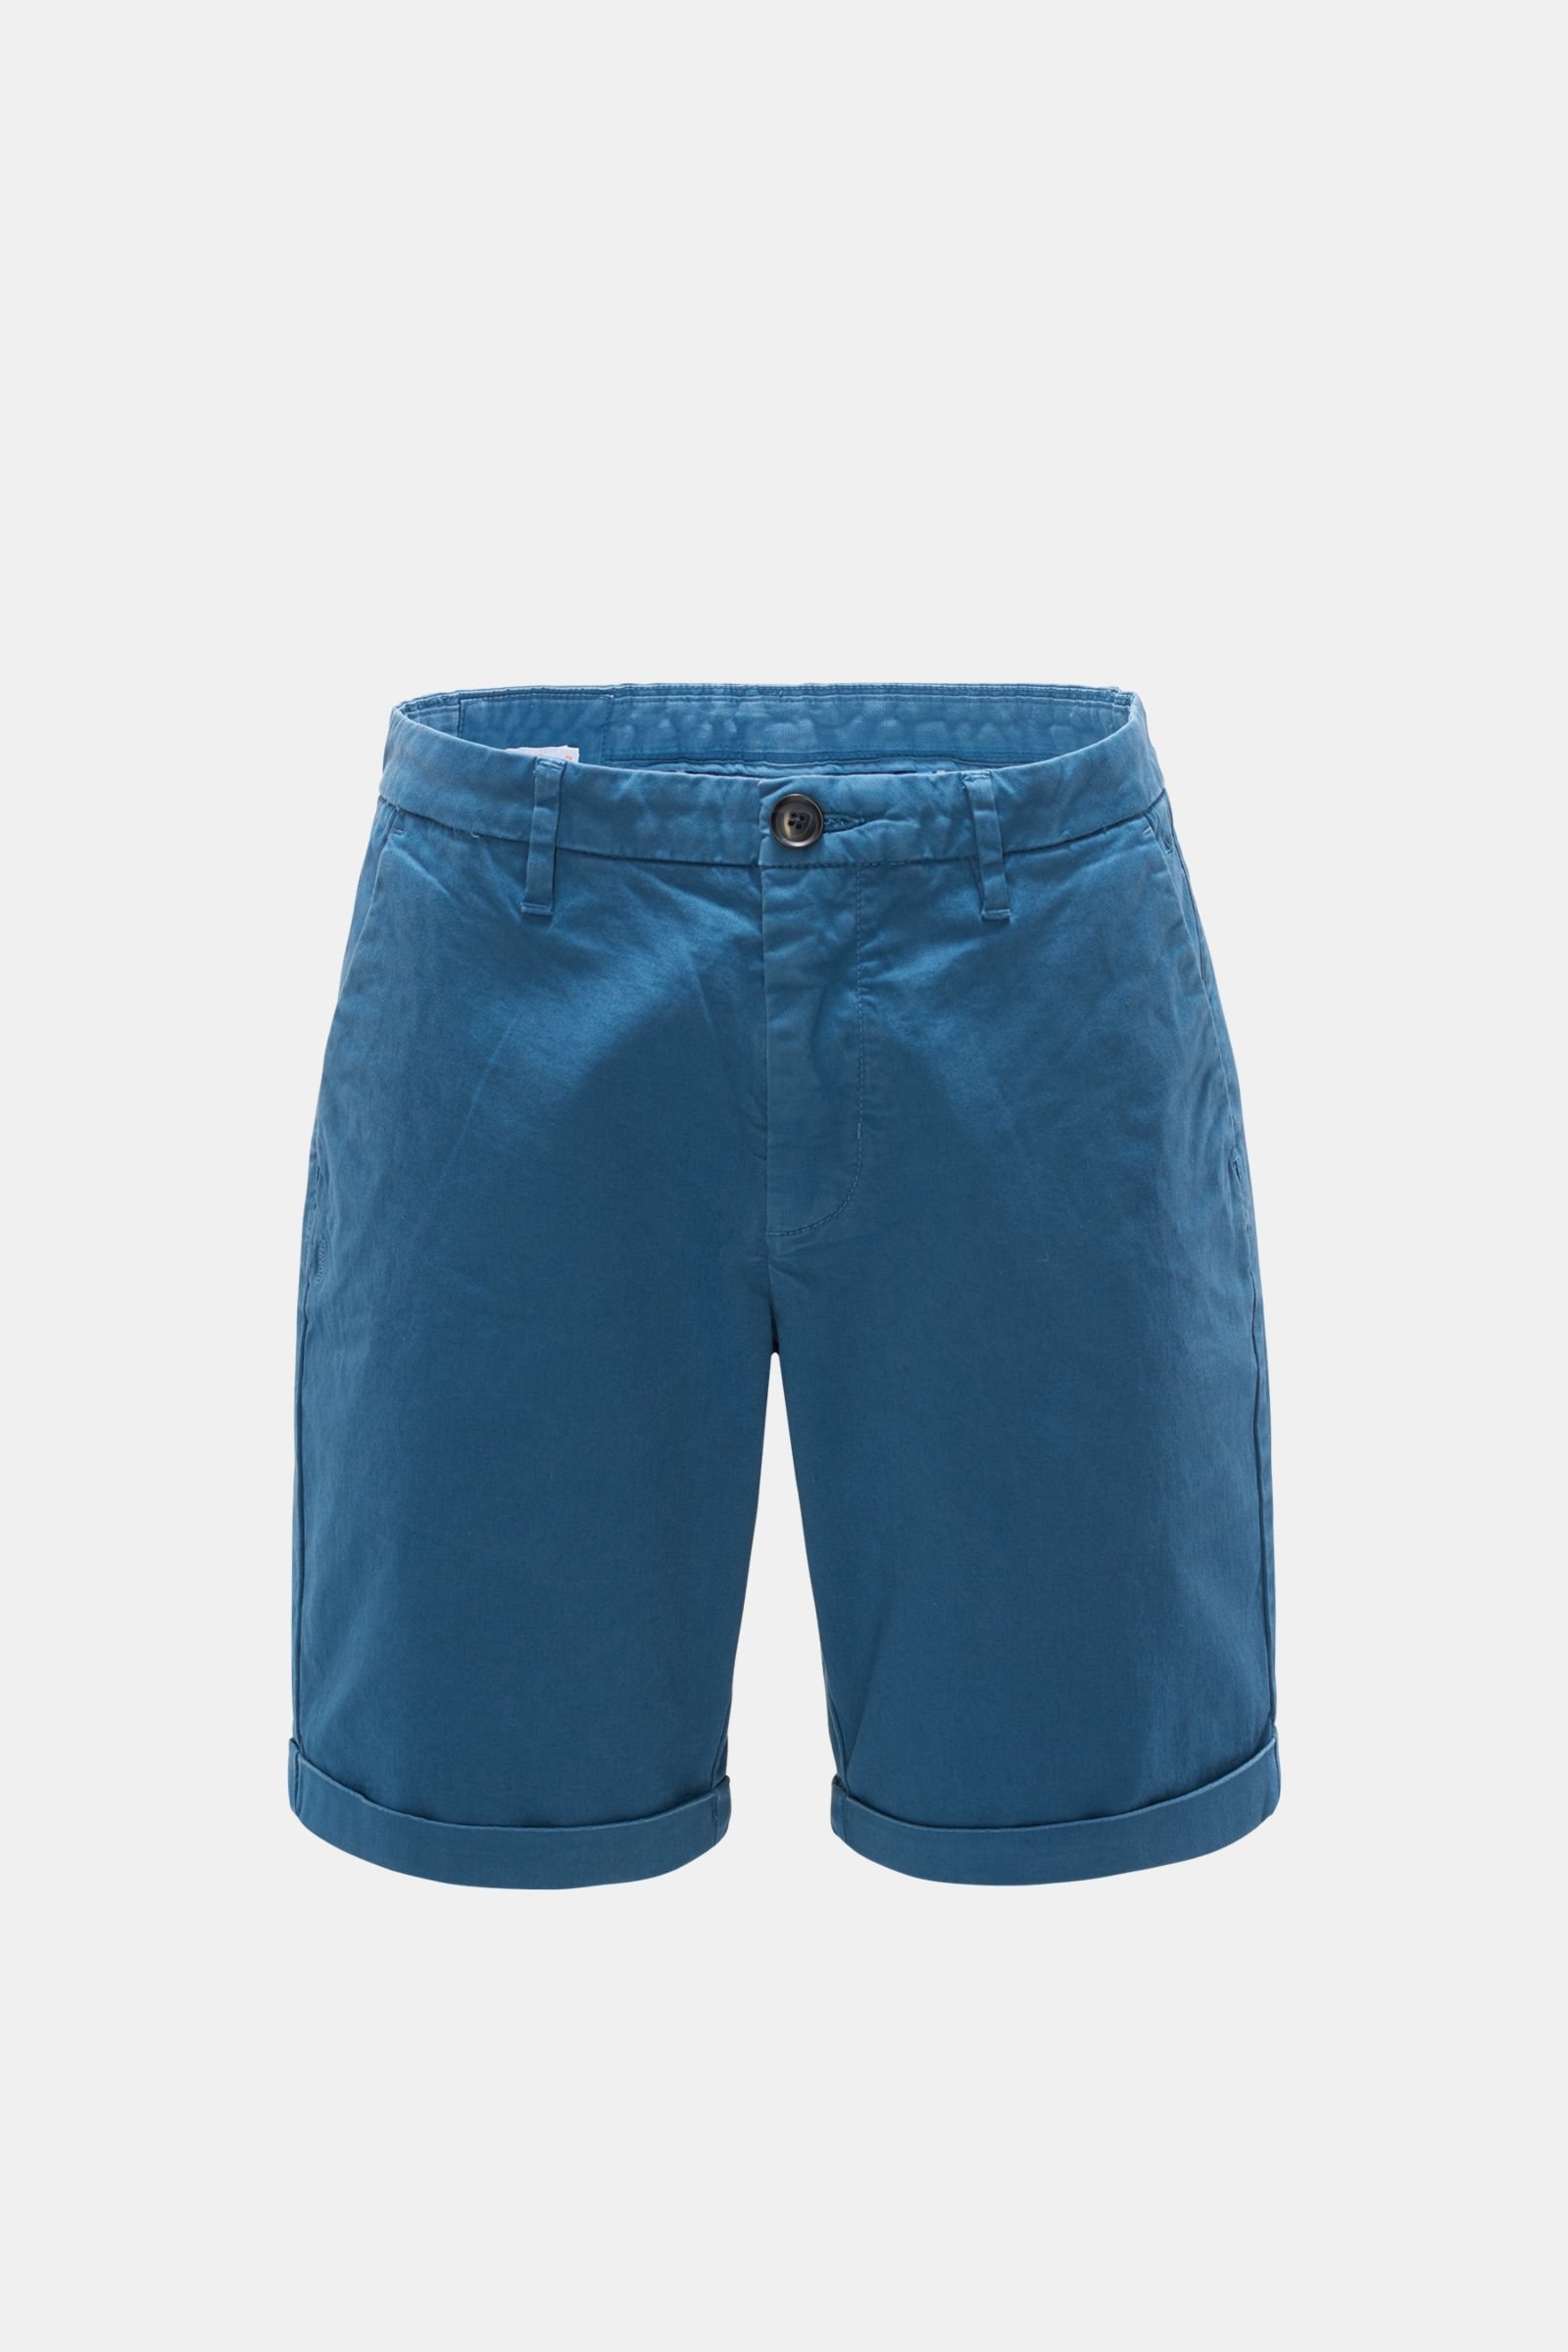 Bermuda shorts grey-blue